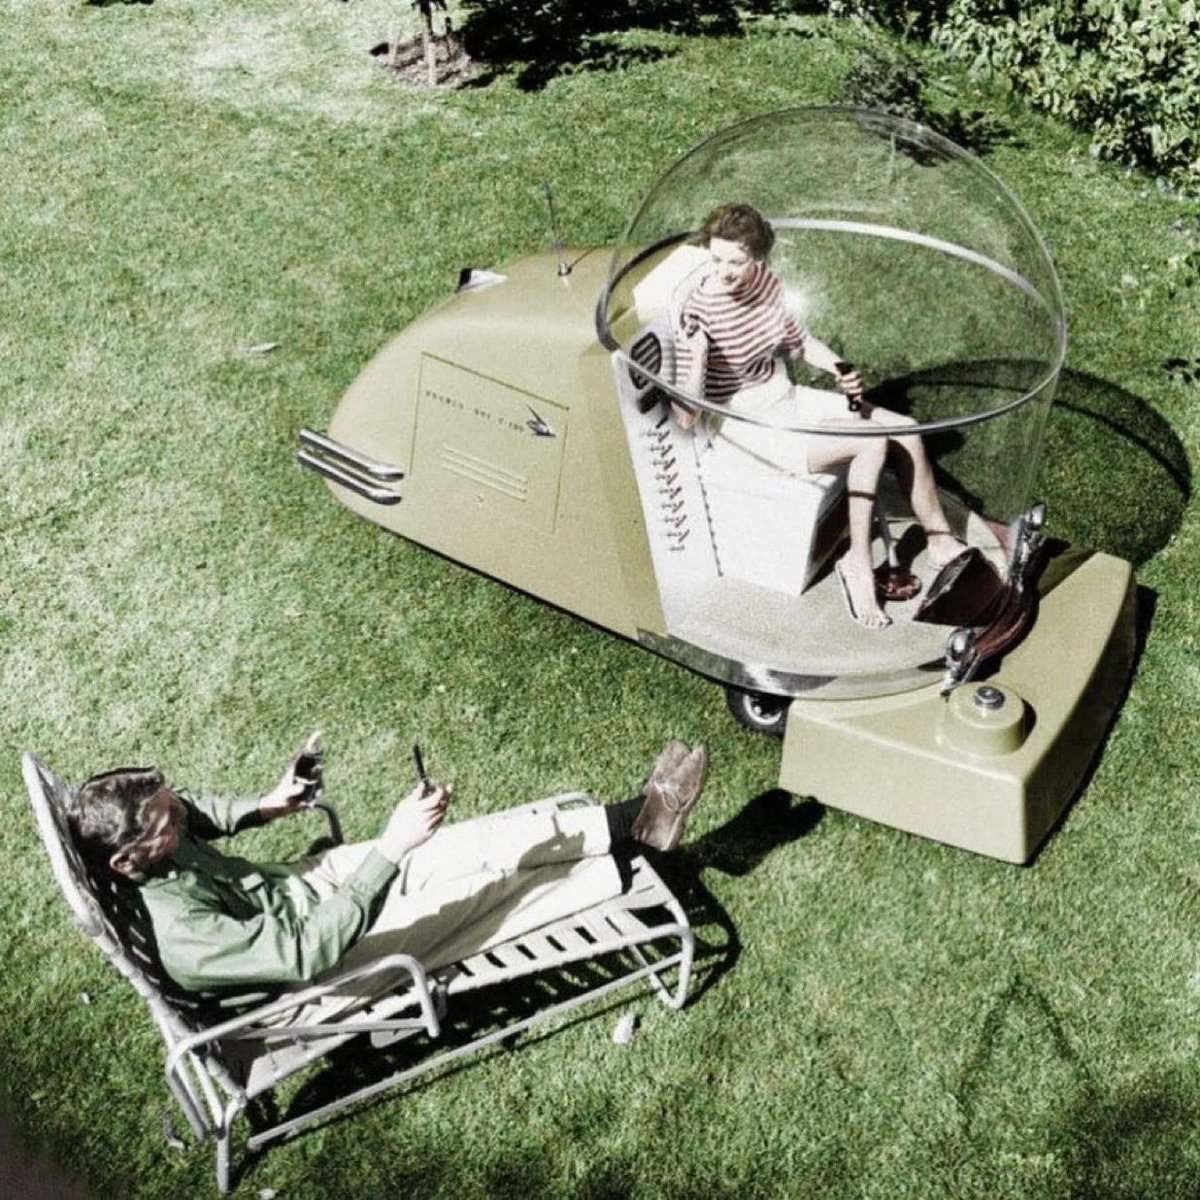 Wonderboy X-100, deneysel bir klimalı çim biçme makinesi (1957) Teknolojimiz neden eskisi gibi ilerlemiyor?